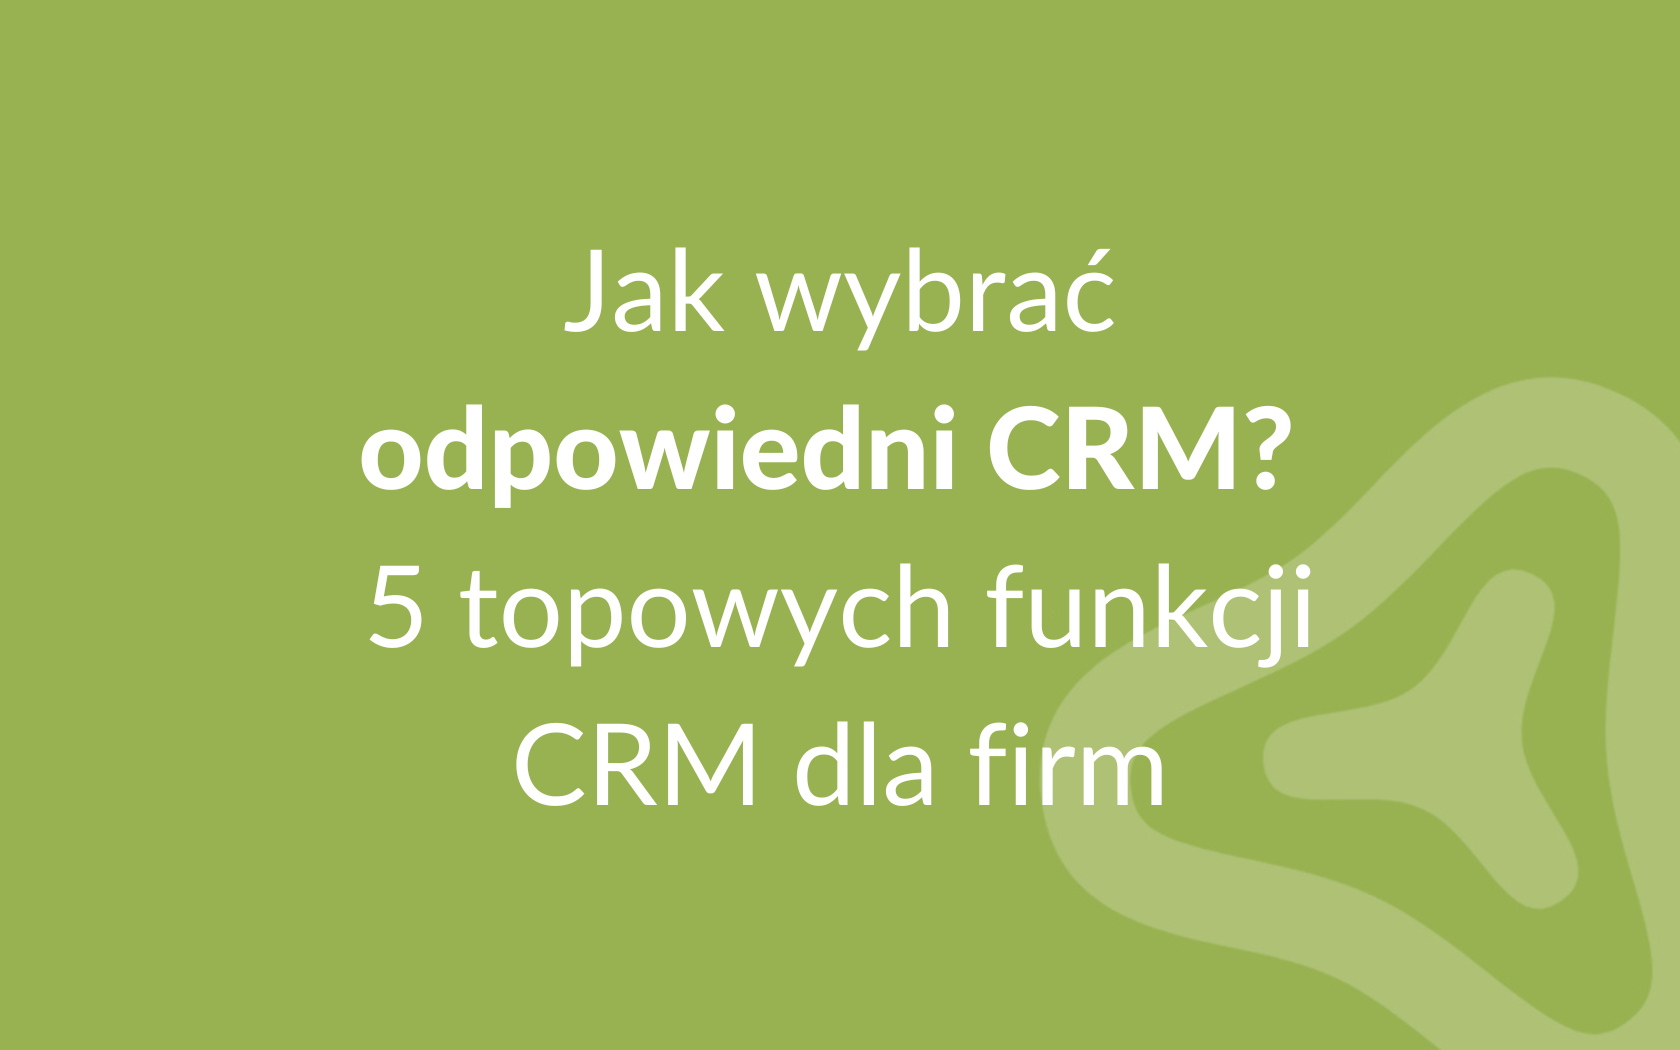 Jak wybrać odpowiedni CRM? 5 topowych funkcji CRM dla firm